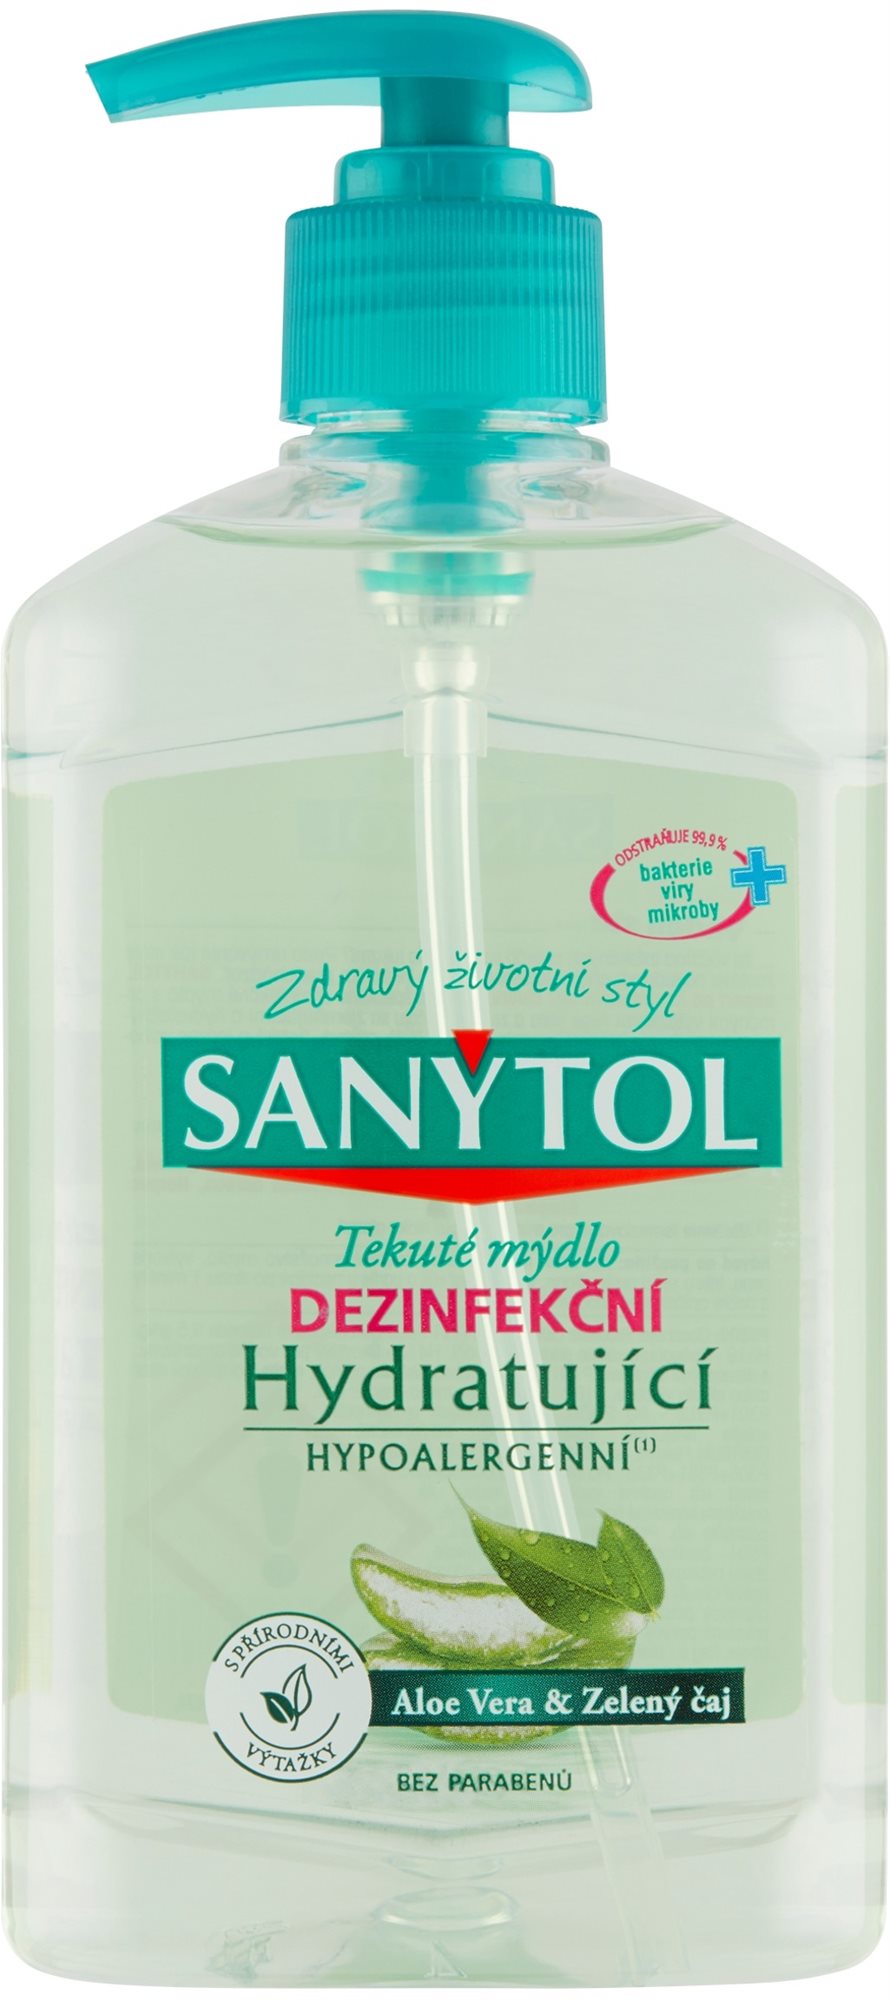 SANYTOL fertőtlenítő és hidratáló szappan 250 ml